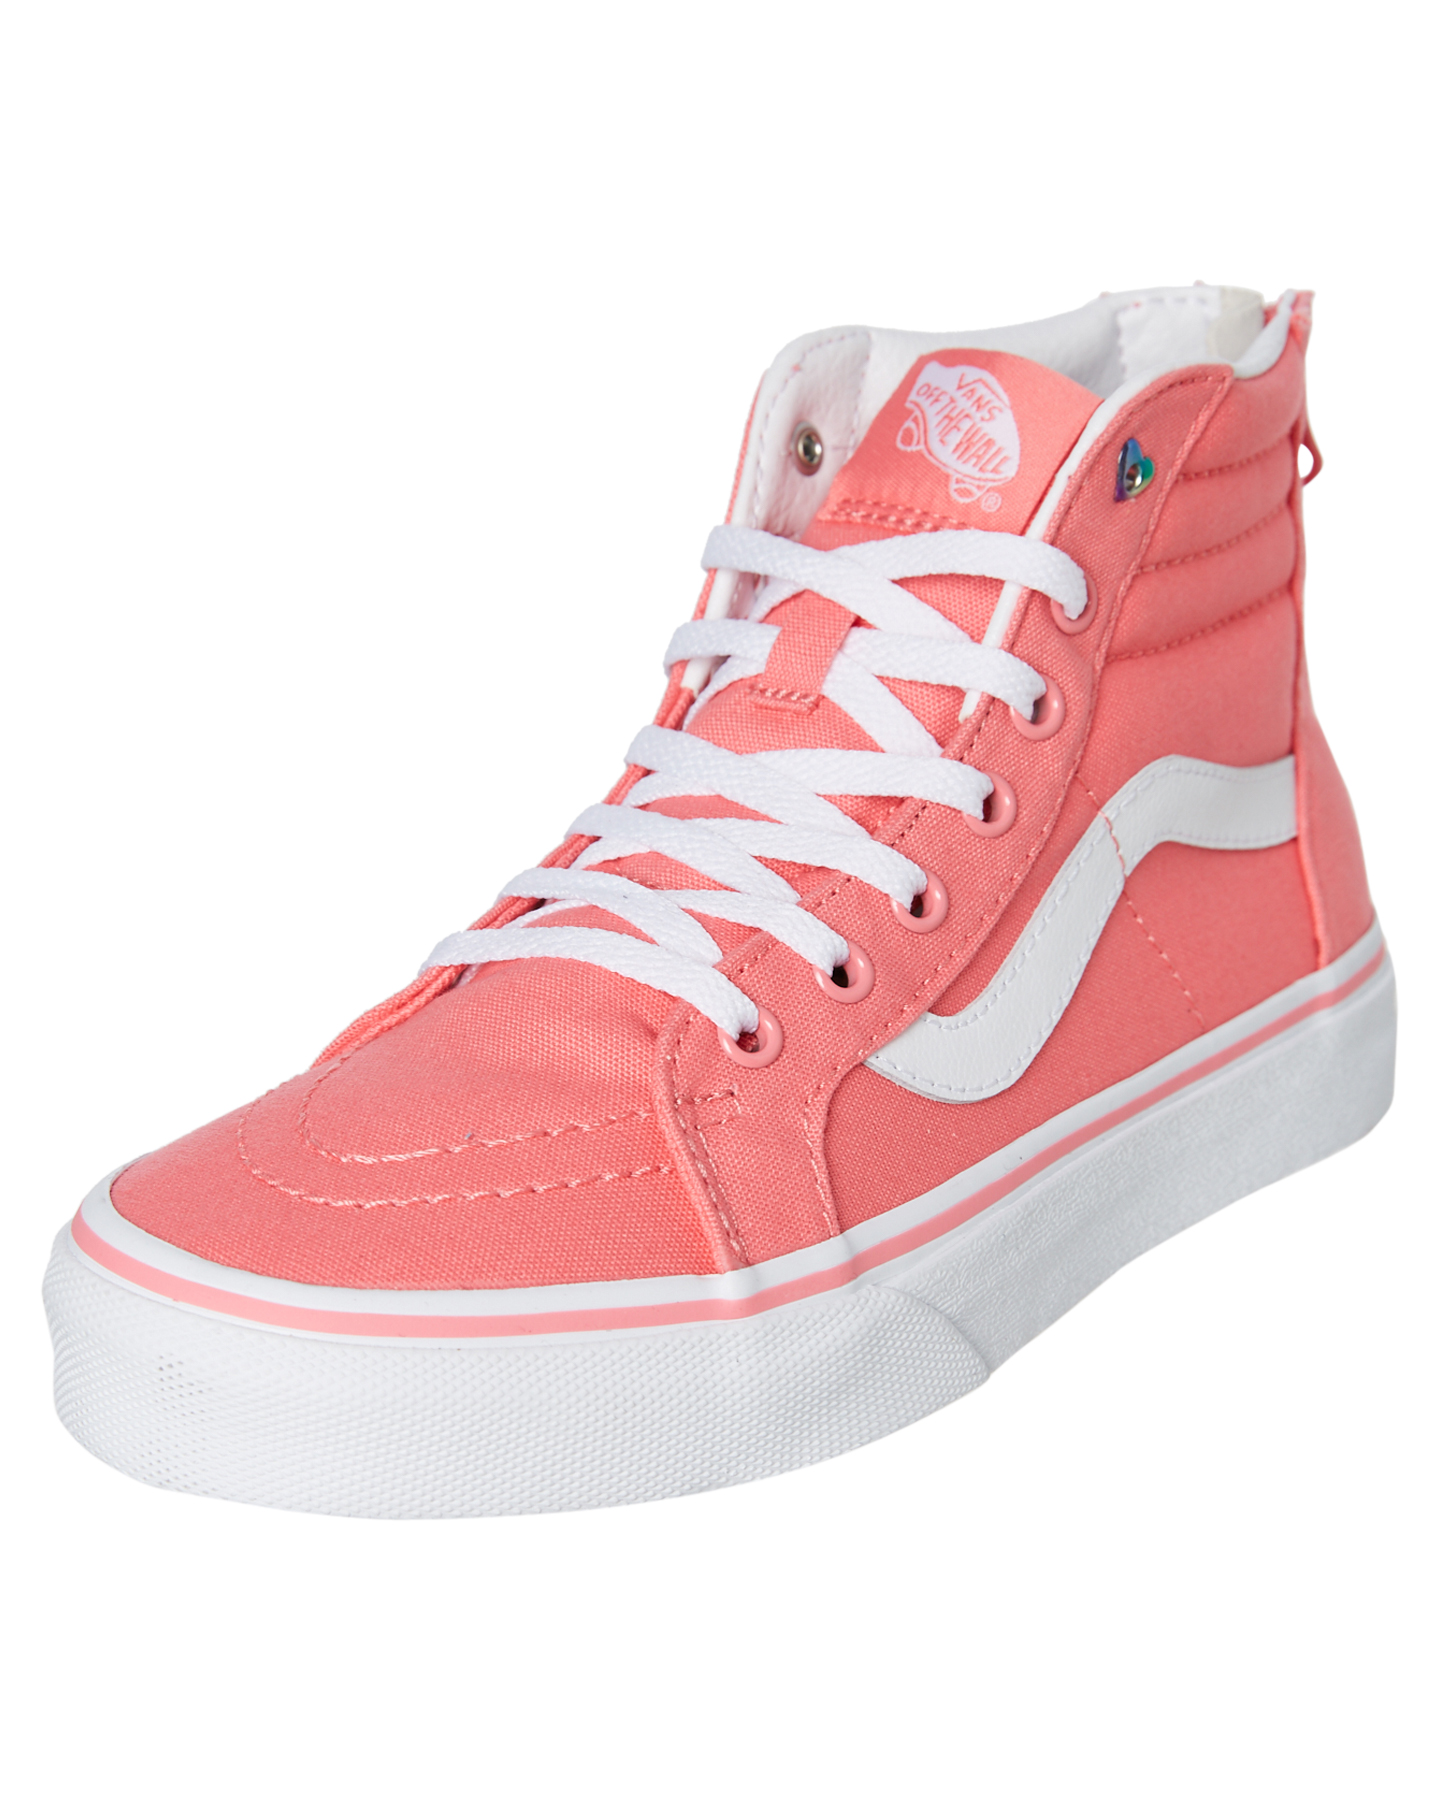 Vans Kids Sk8 Hi Zip Shoe Teens Strawberry Pink